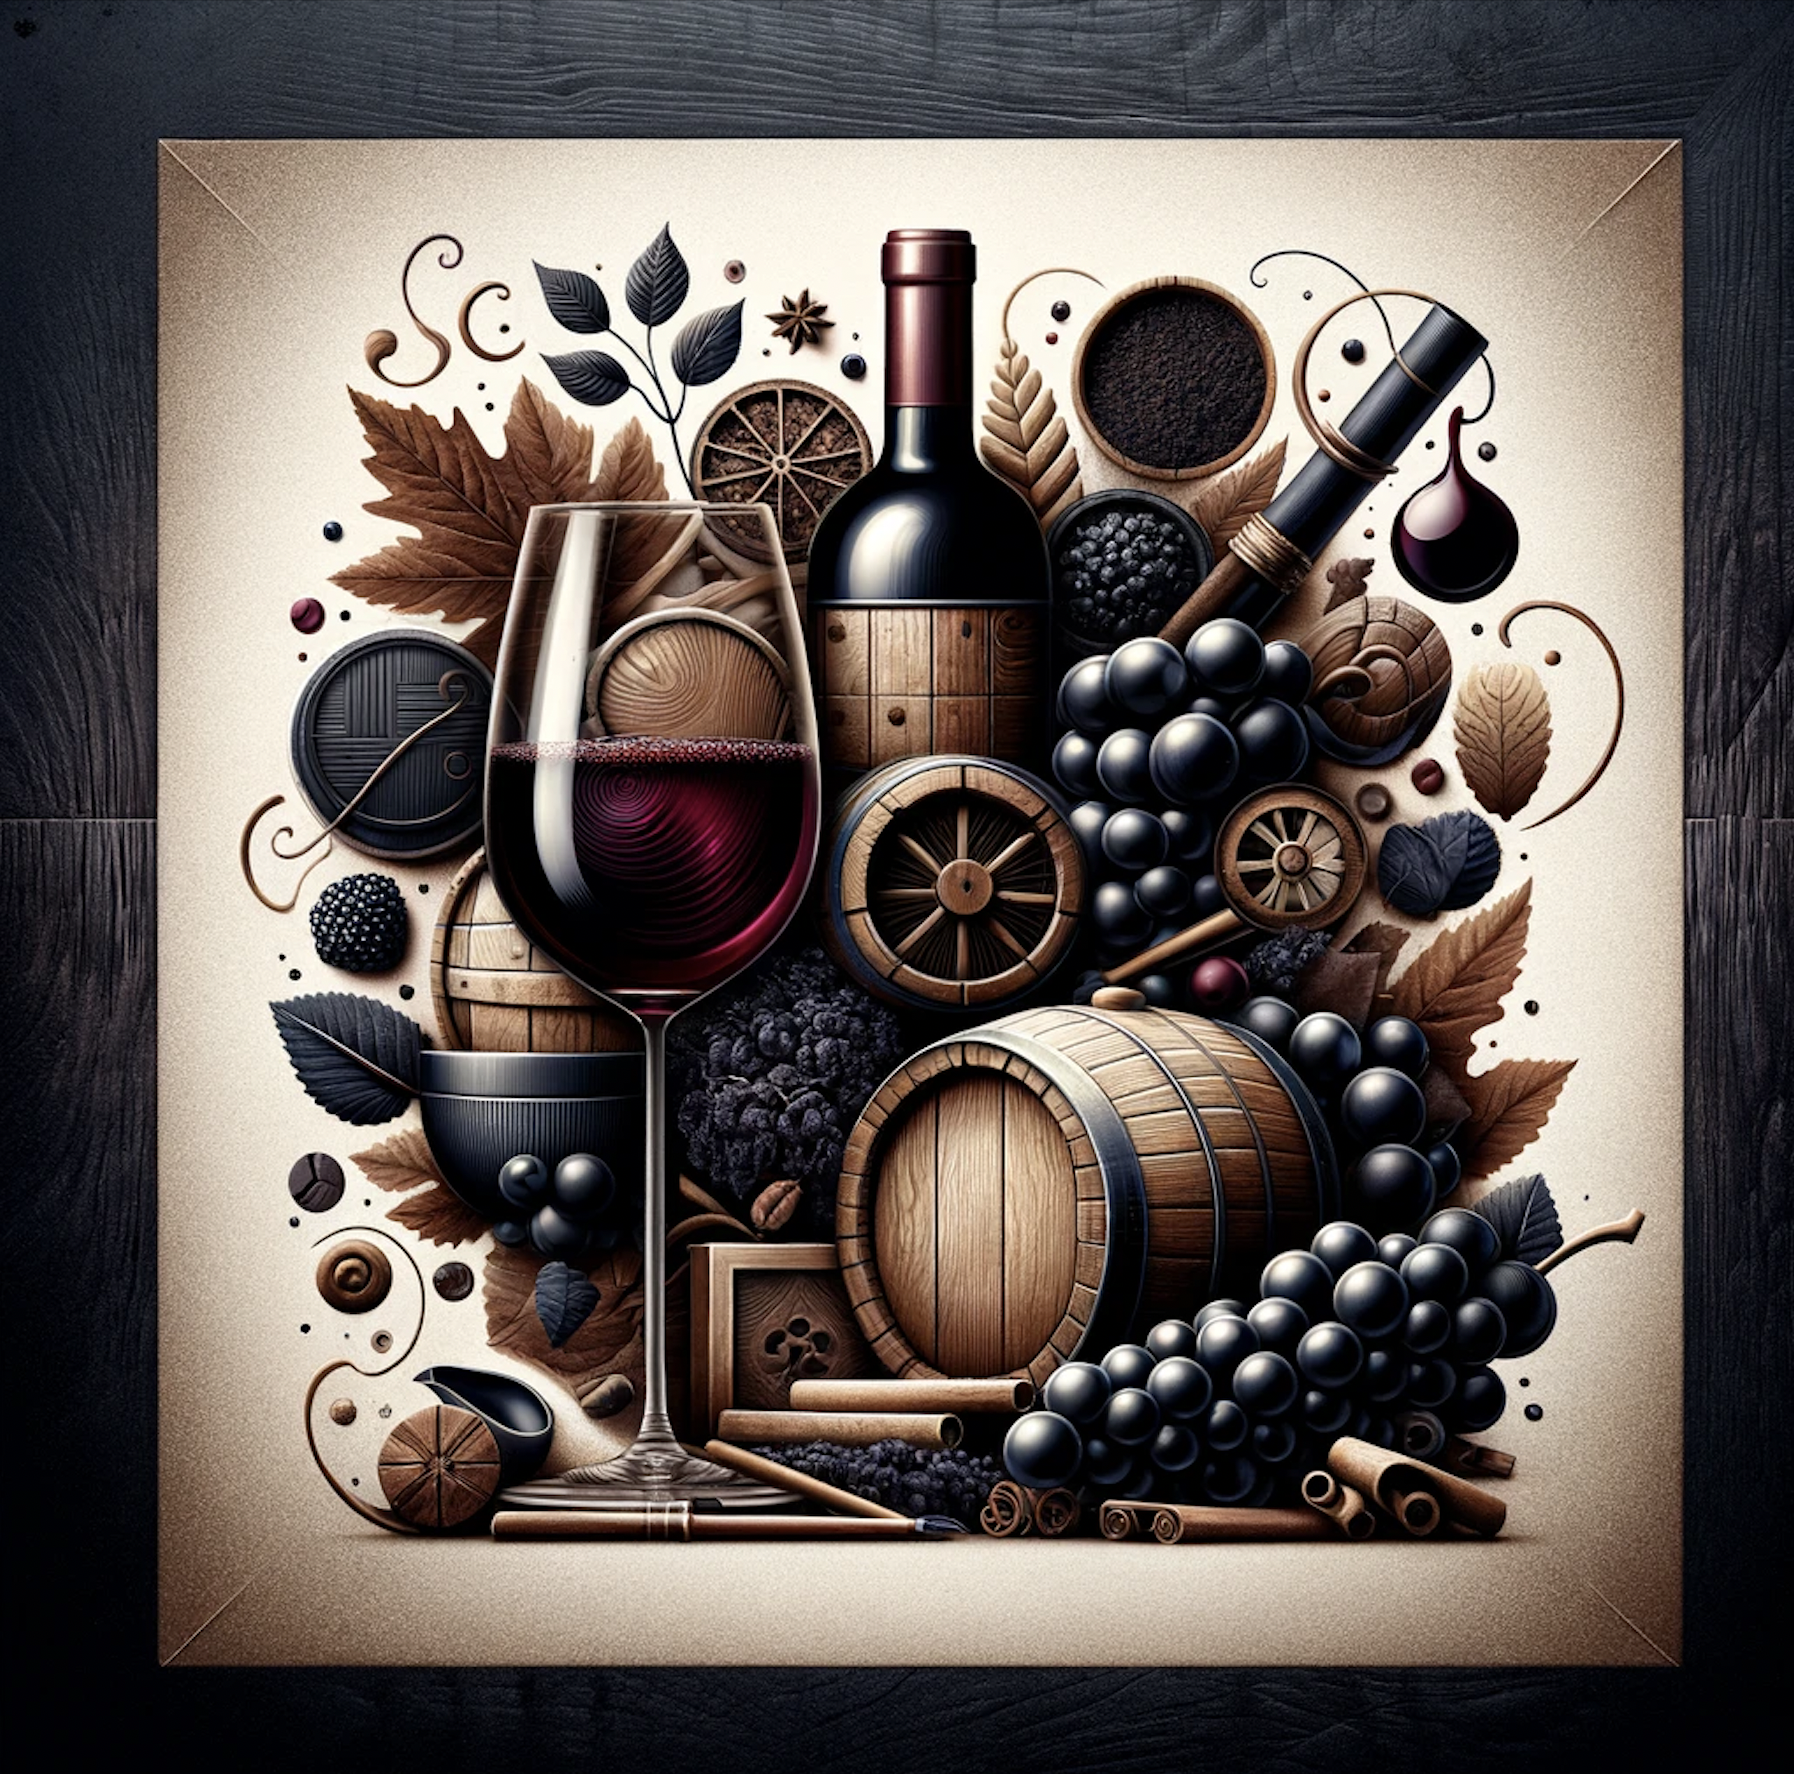 Rượu Malbec: Từ thùng gỗ đến kệ trưng bày